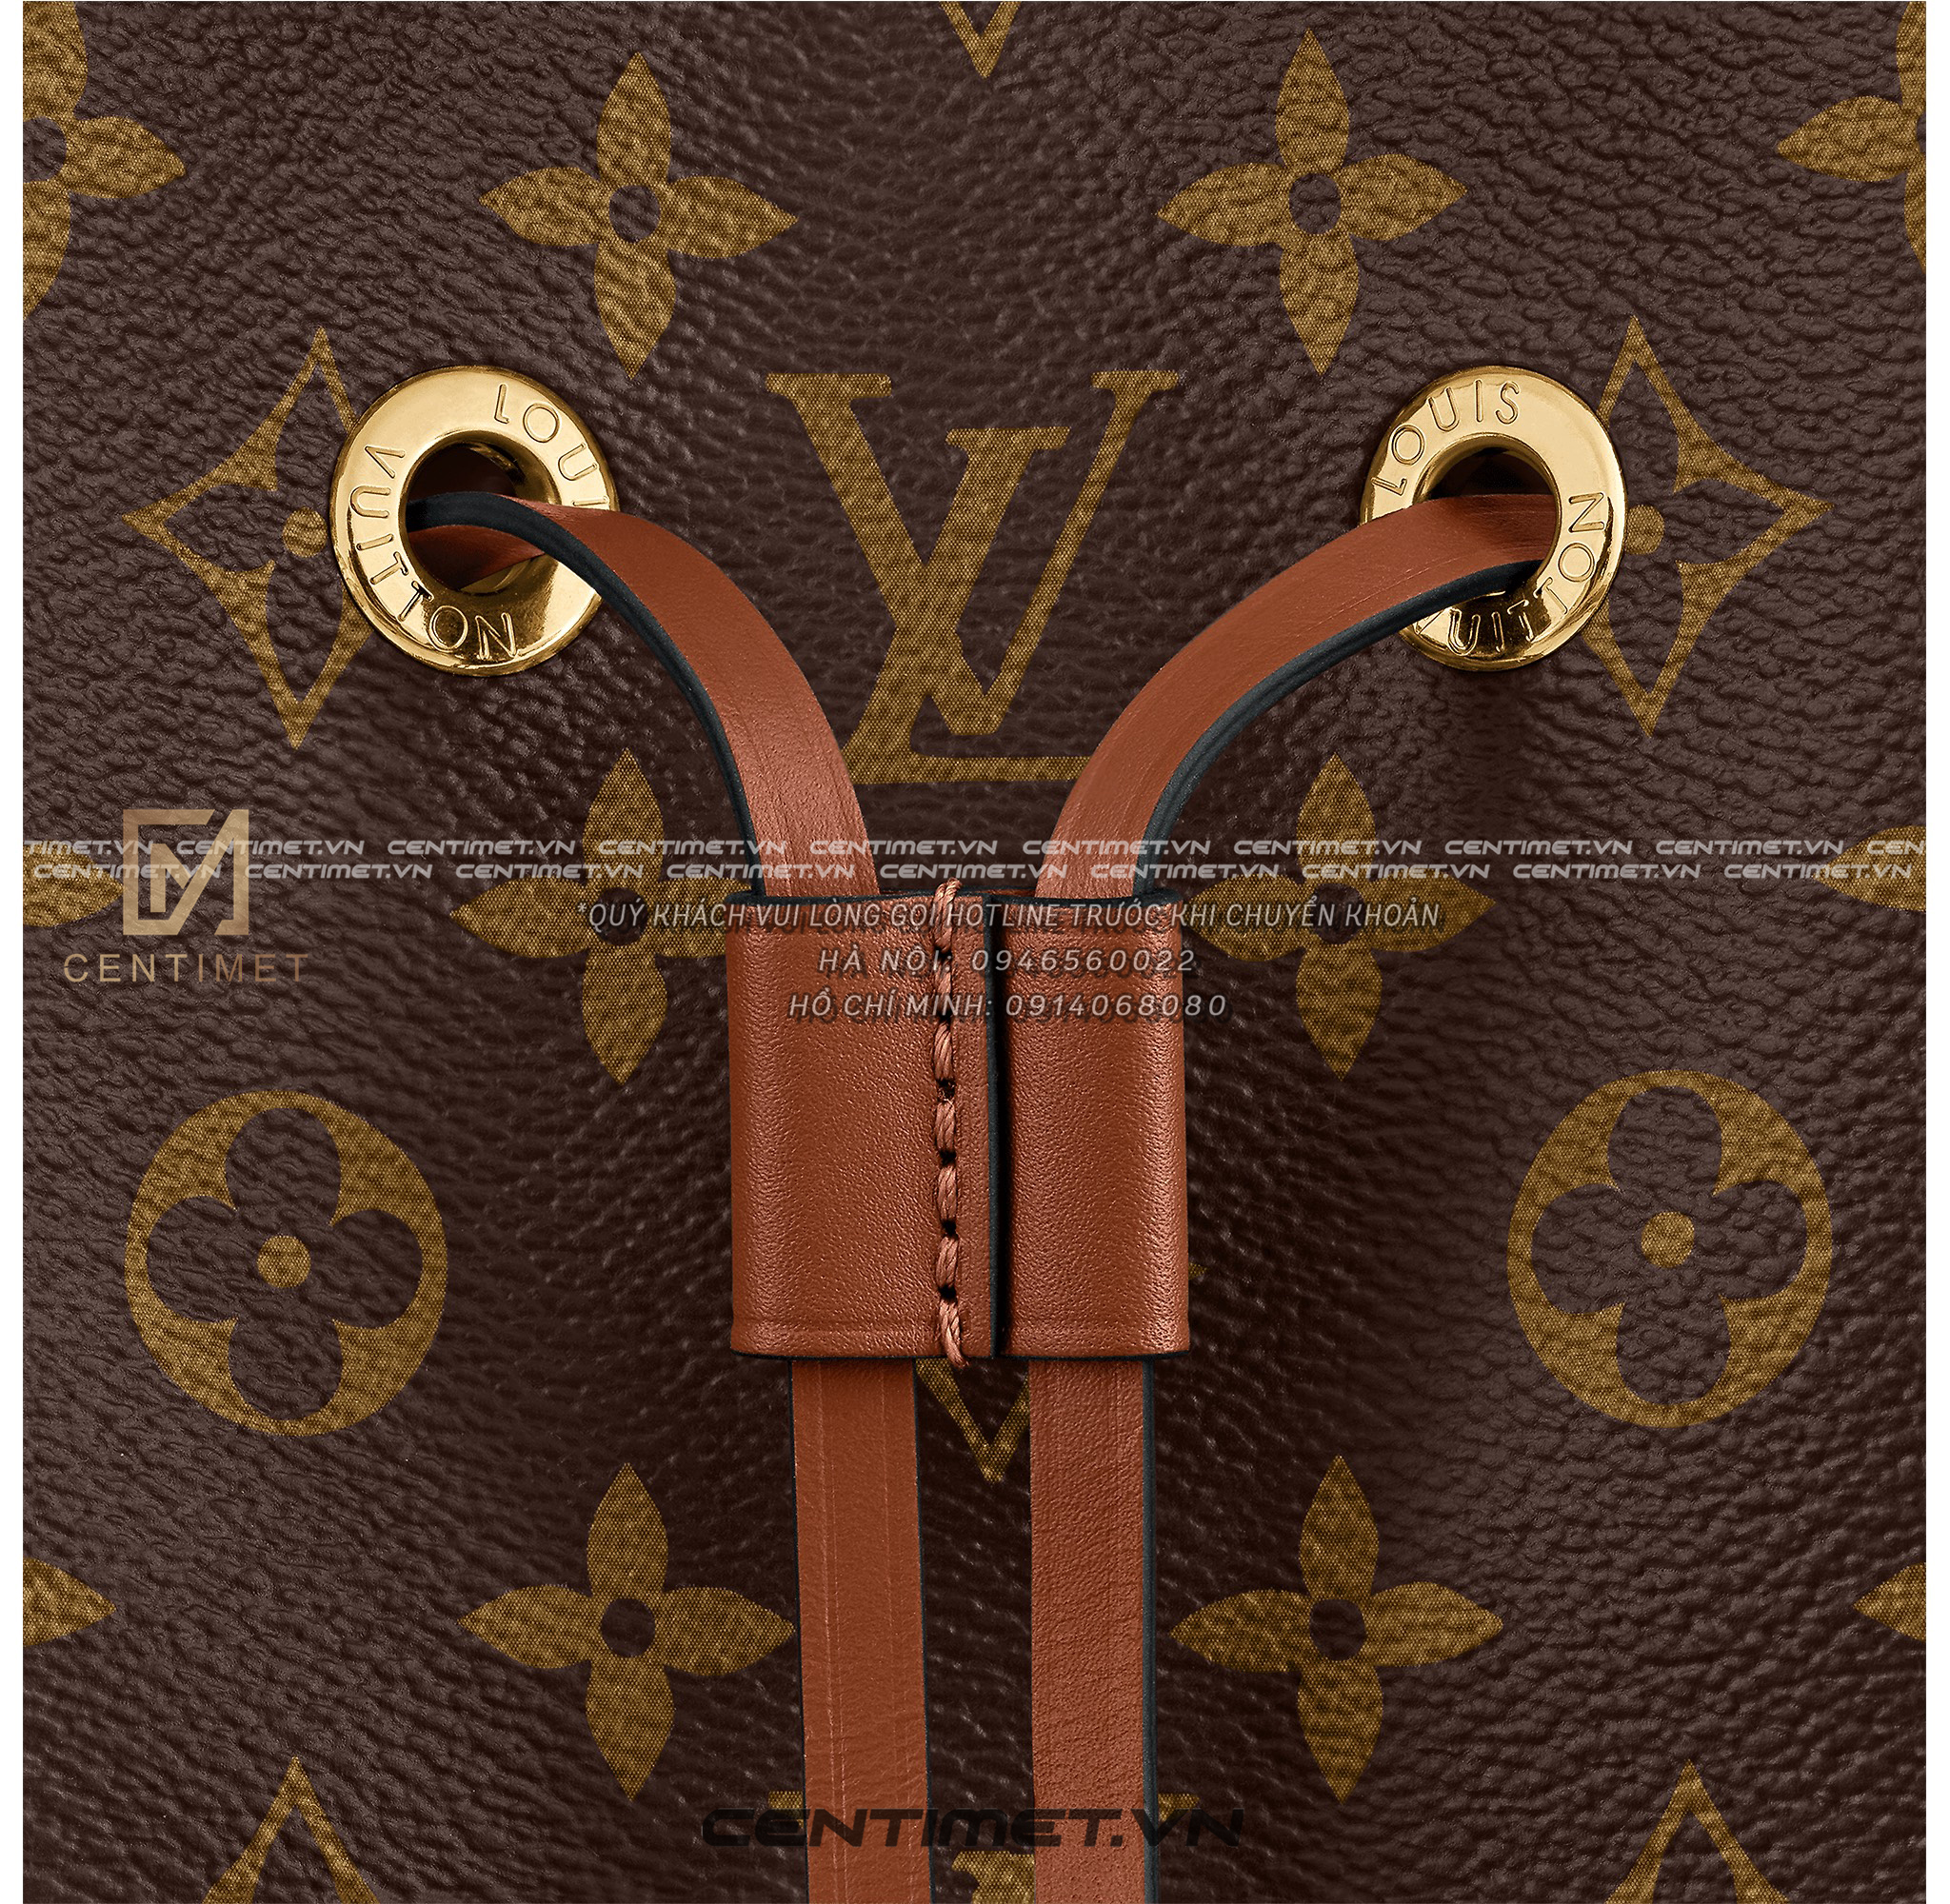 Louis Vuitton Hè 2021 Ngày Hè rực rỡ  StyleRepublikcom  Thời Trang  sáng tạo và kinh doanh